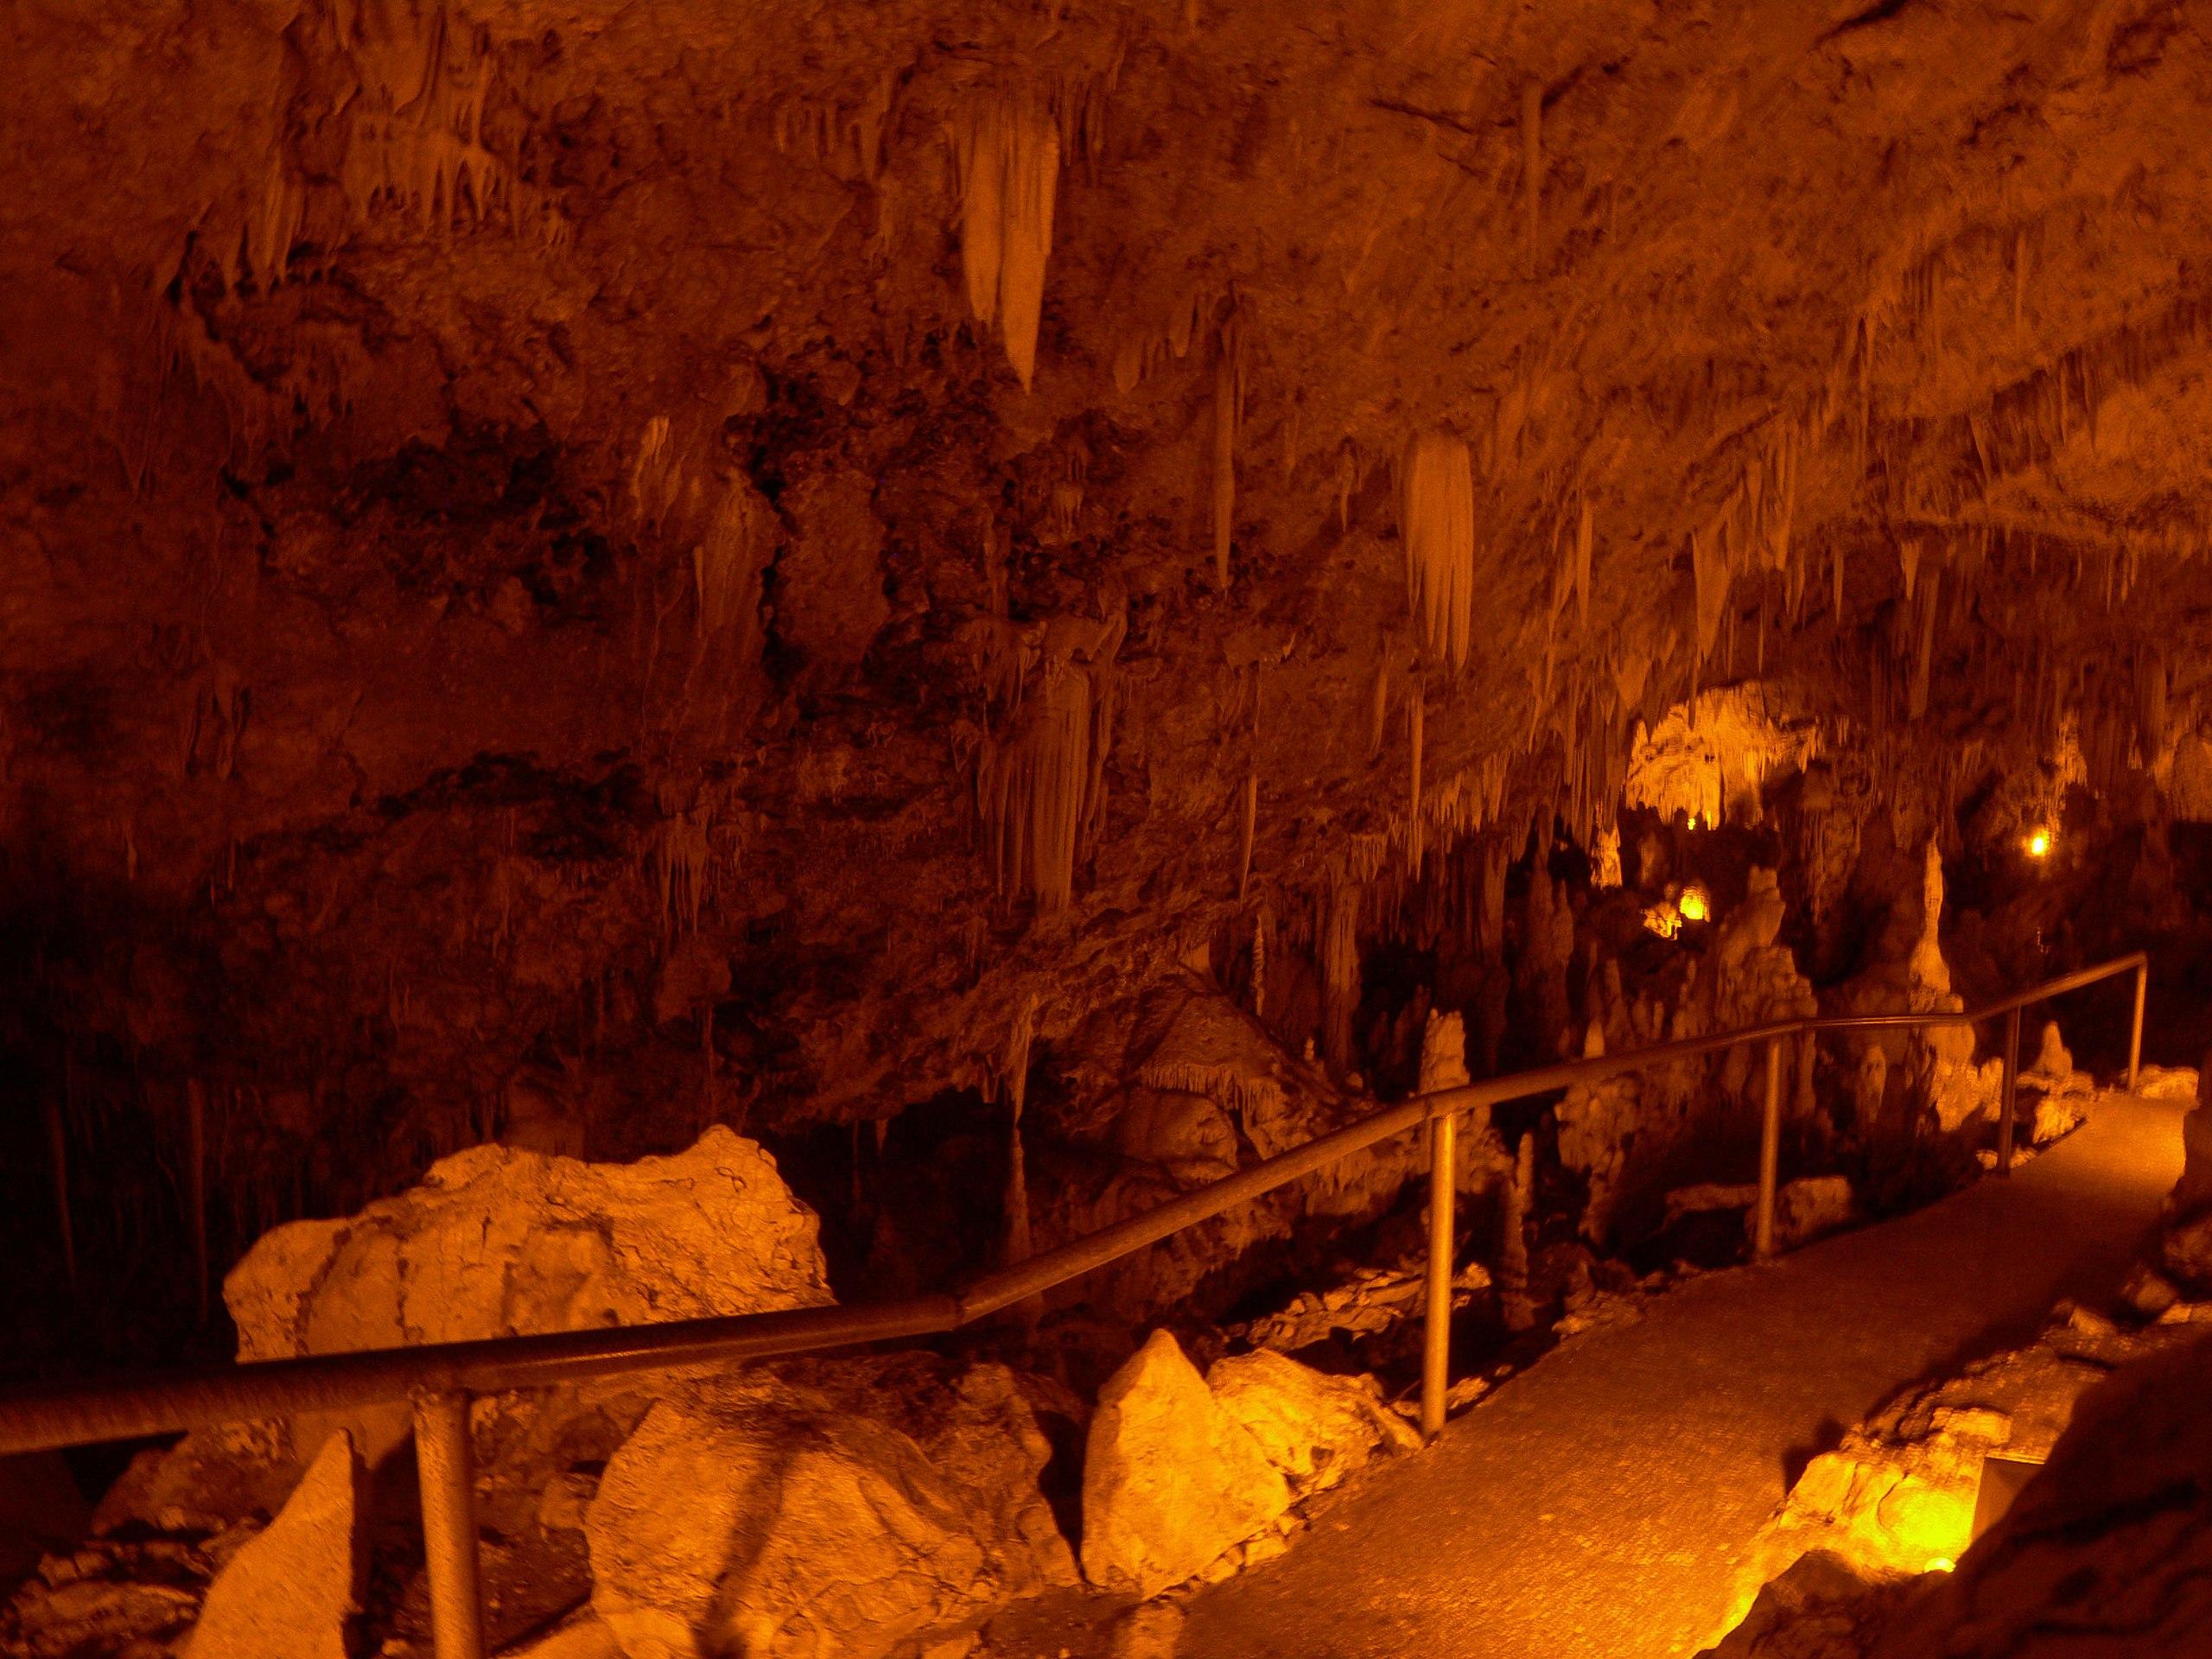 Ιωάννινα - Σπήλαιο Περάματος8fd